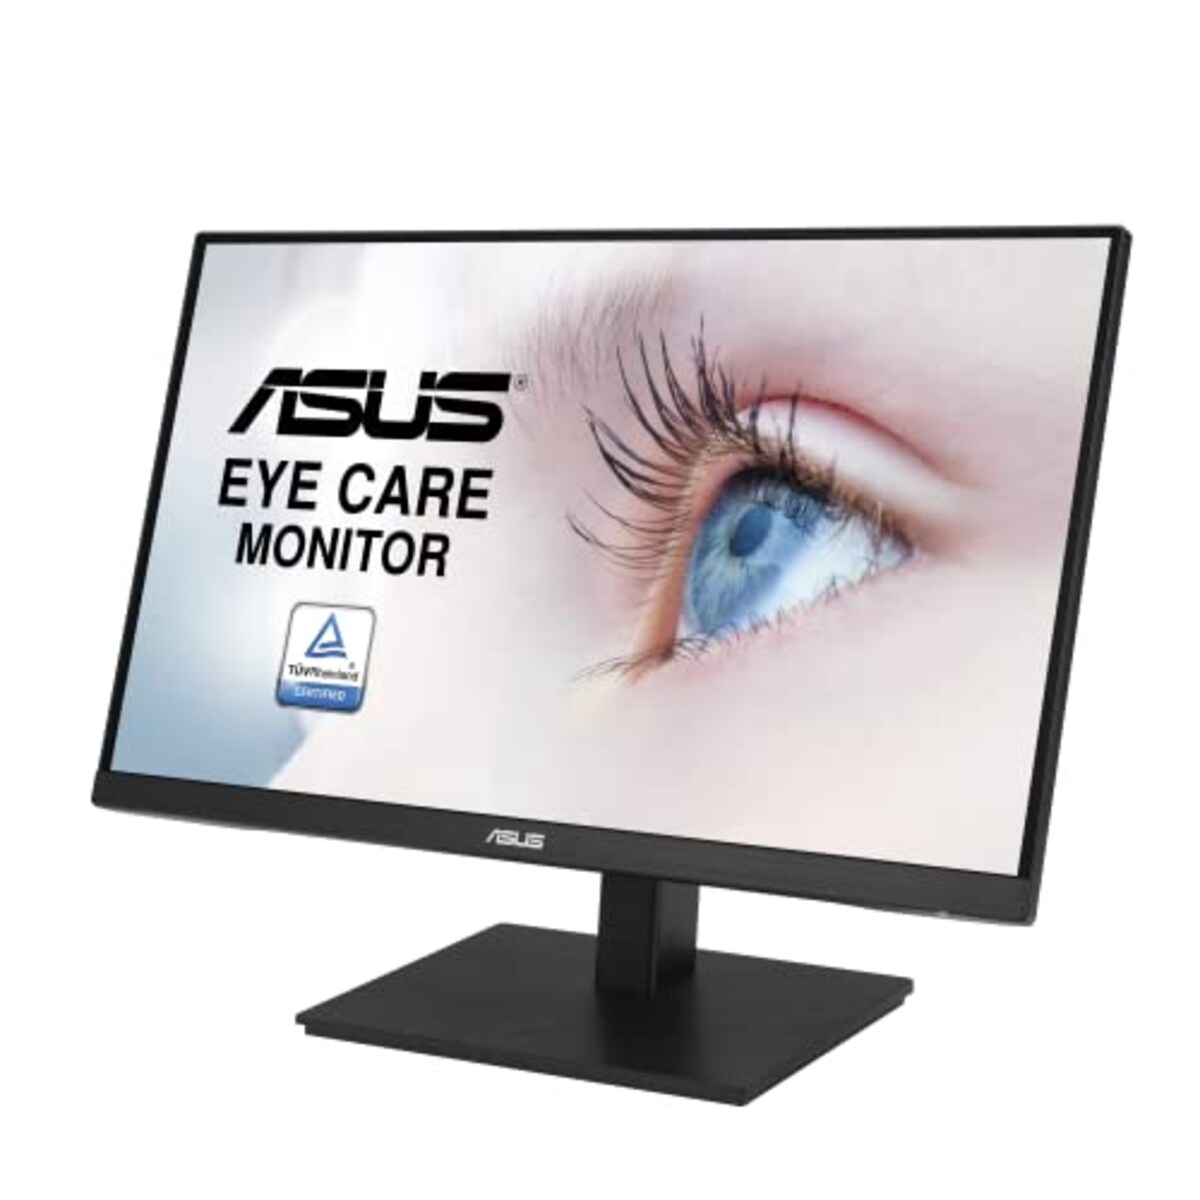  【Amazon.co.jp限定】ASUS モニター Eye Care VA24EQSB 23.8インチ / フルHD / 1920 x 1080 / IPS フレームレス / 75Hz / Adaptive-Sync/ブルーライト軽減/フリッカフリー 高さ調整 縦横回転 VESA対応 国内正規品画像12 